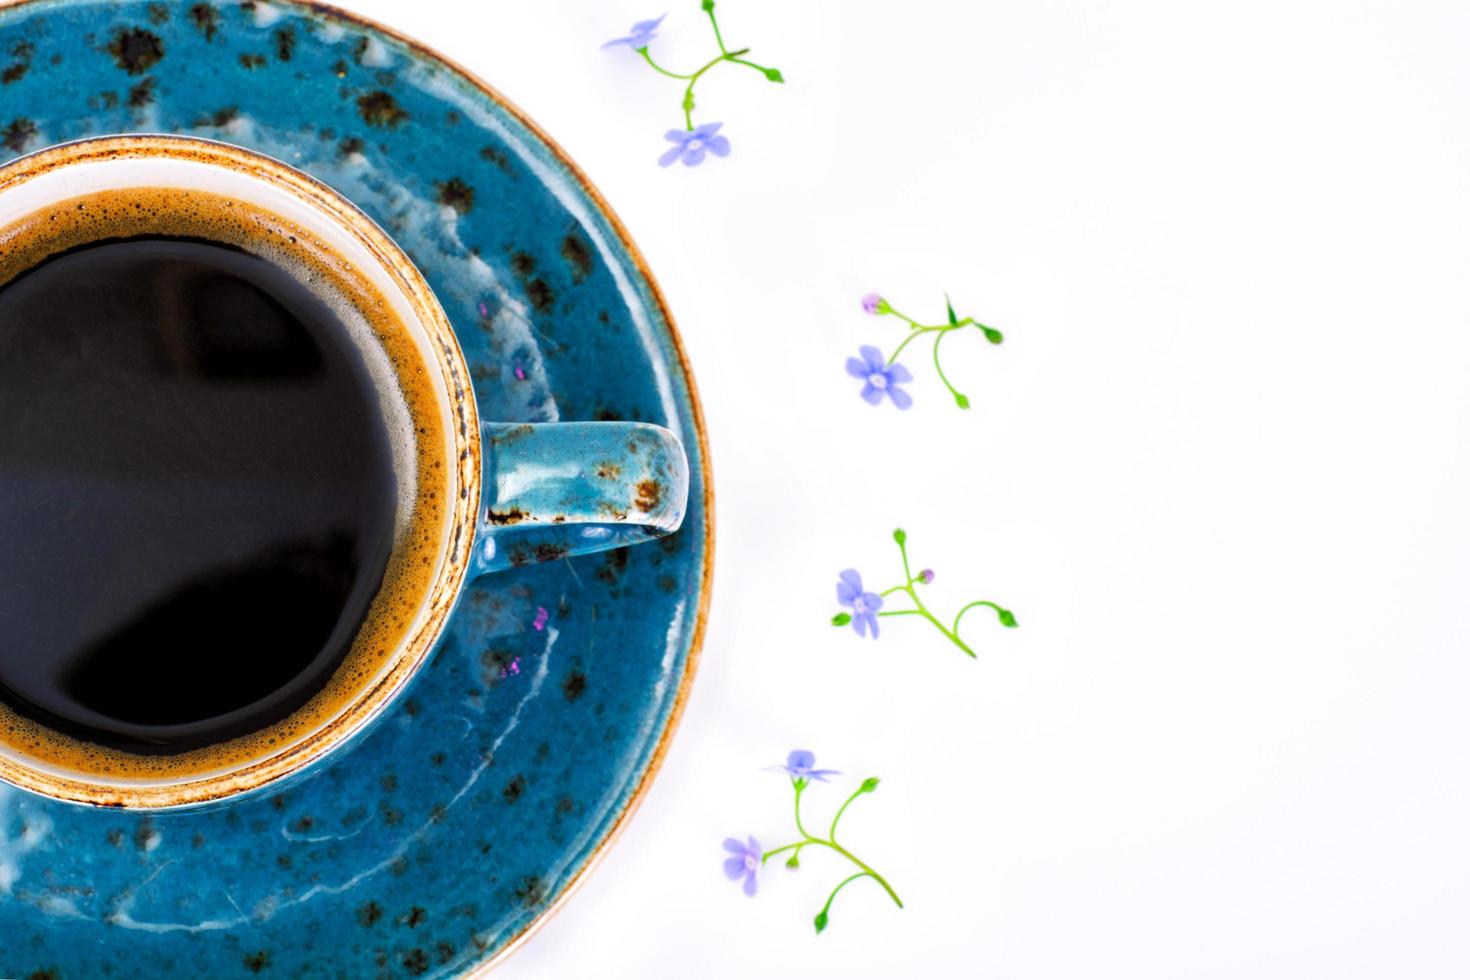 café en una taza retro azul con flores foto